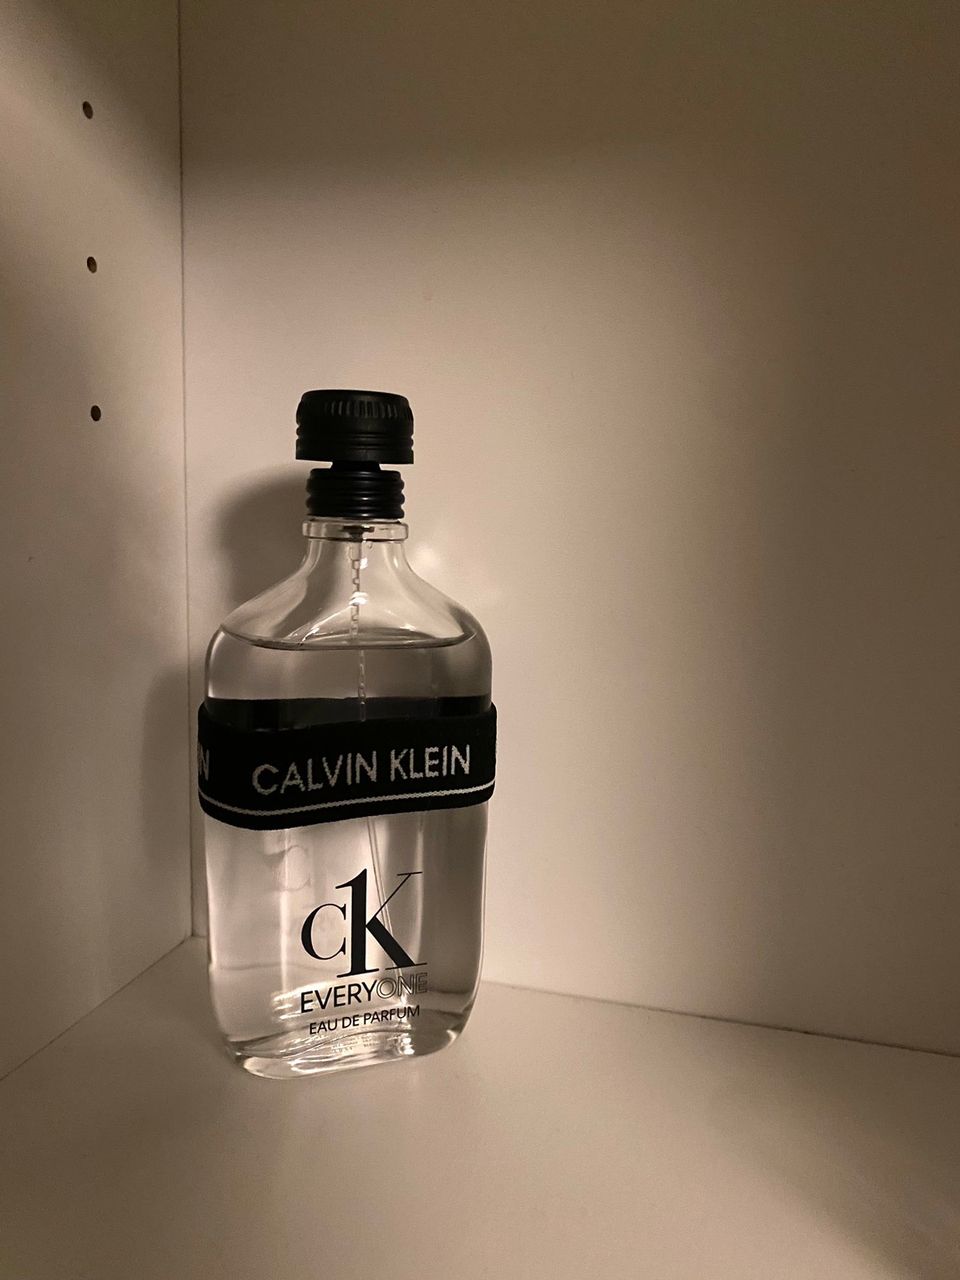 Calvin klein everyone eau de parfum